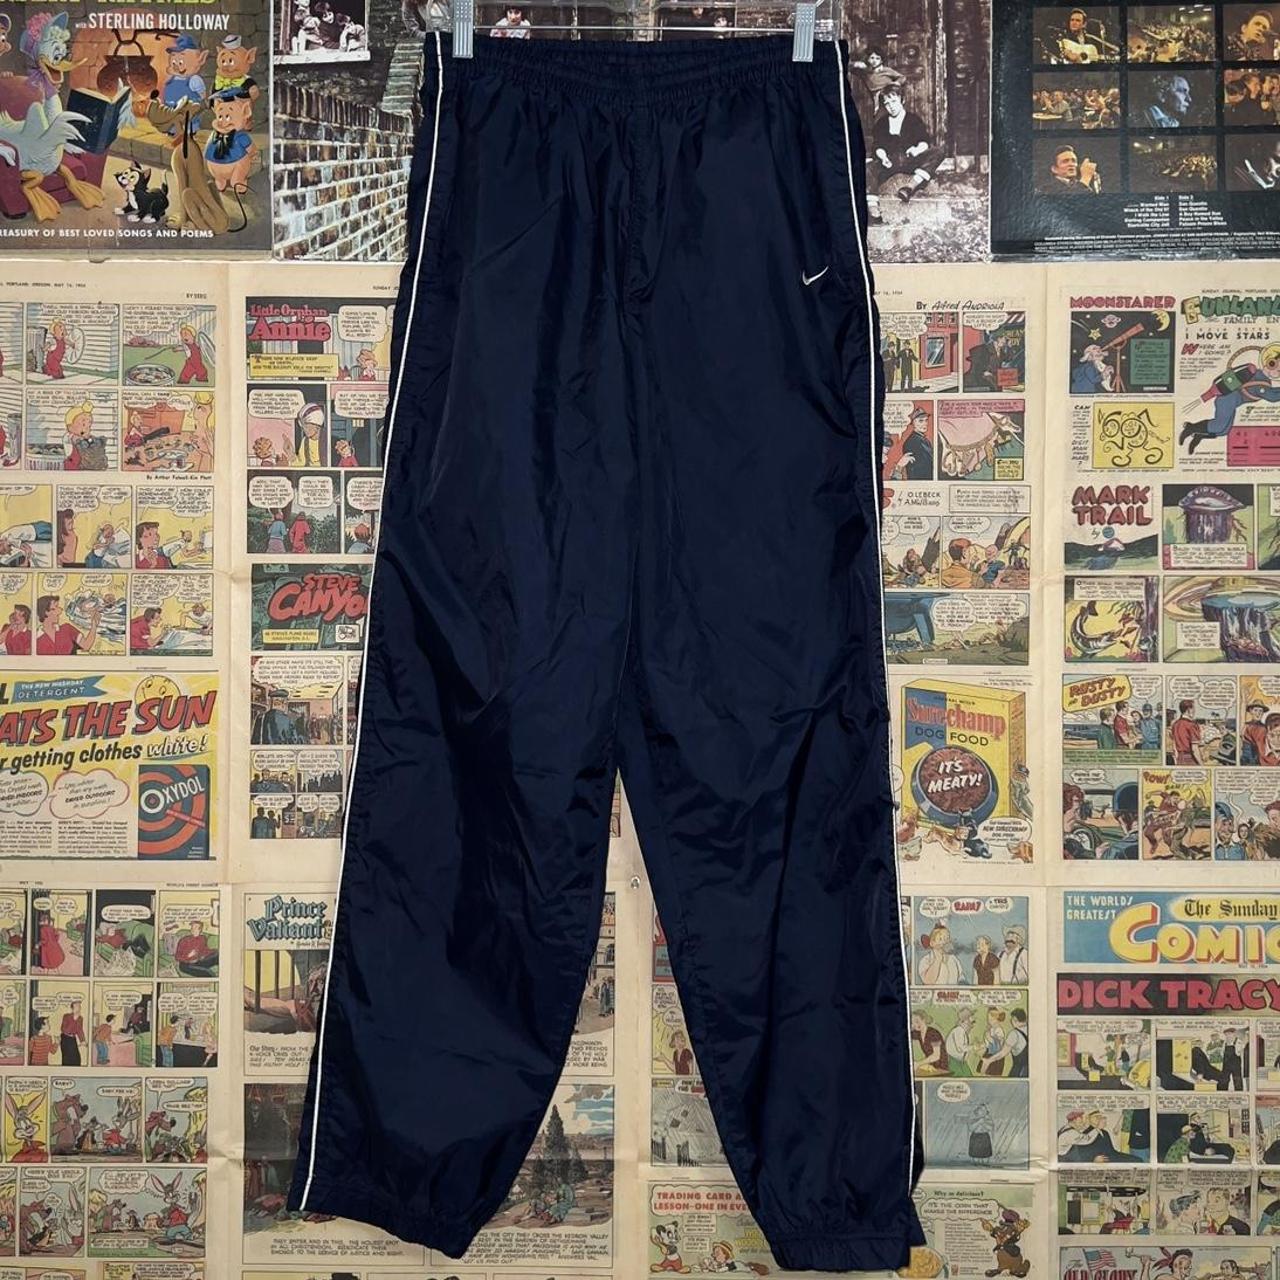 Vintage Nike Sweatpants! - Depop